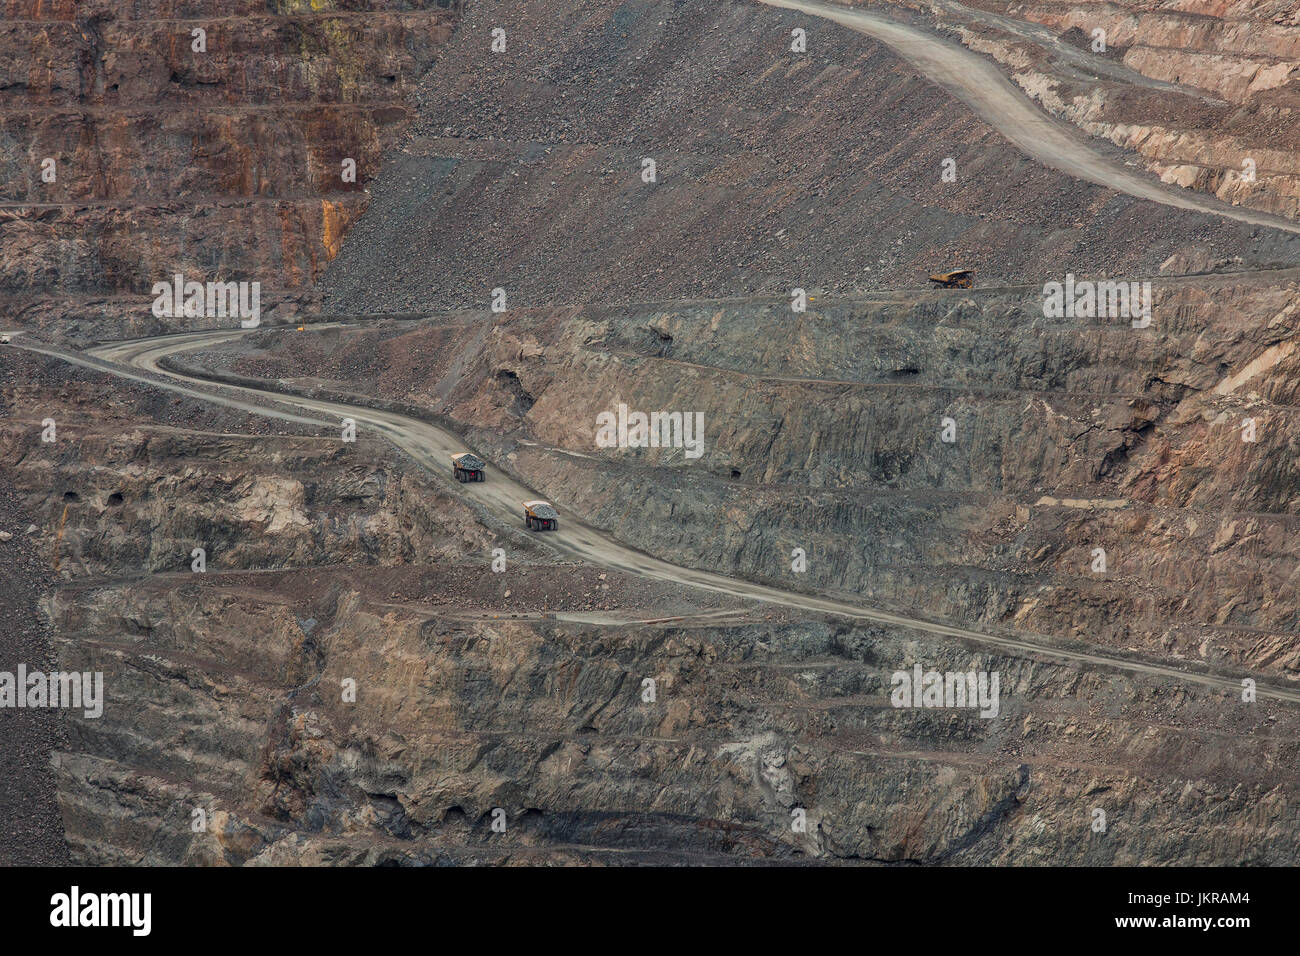 Angolo di alta vista di autocarri con cassone ribaltabile su sterrato a open-pit miniera di carbone, Kalgoorlie, Australia occidentale Foto Stock